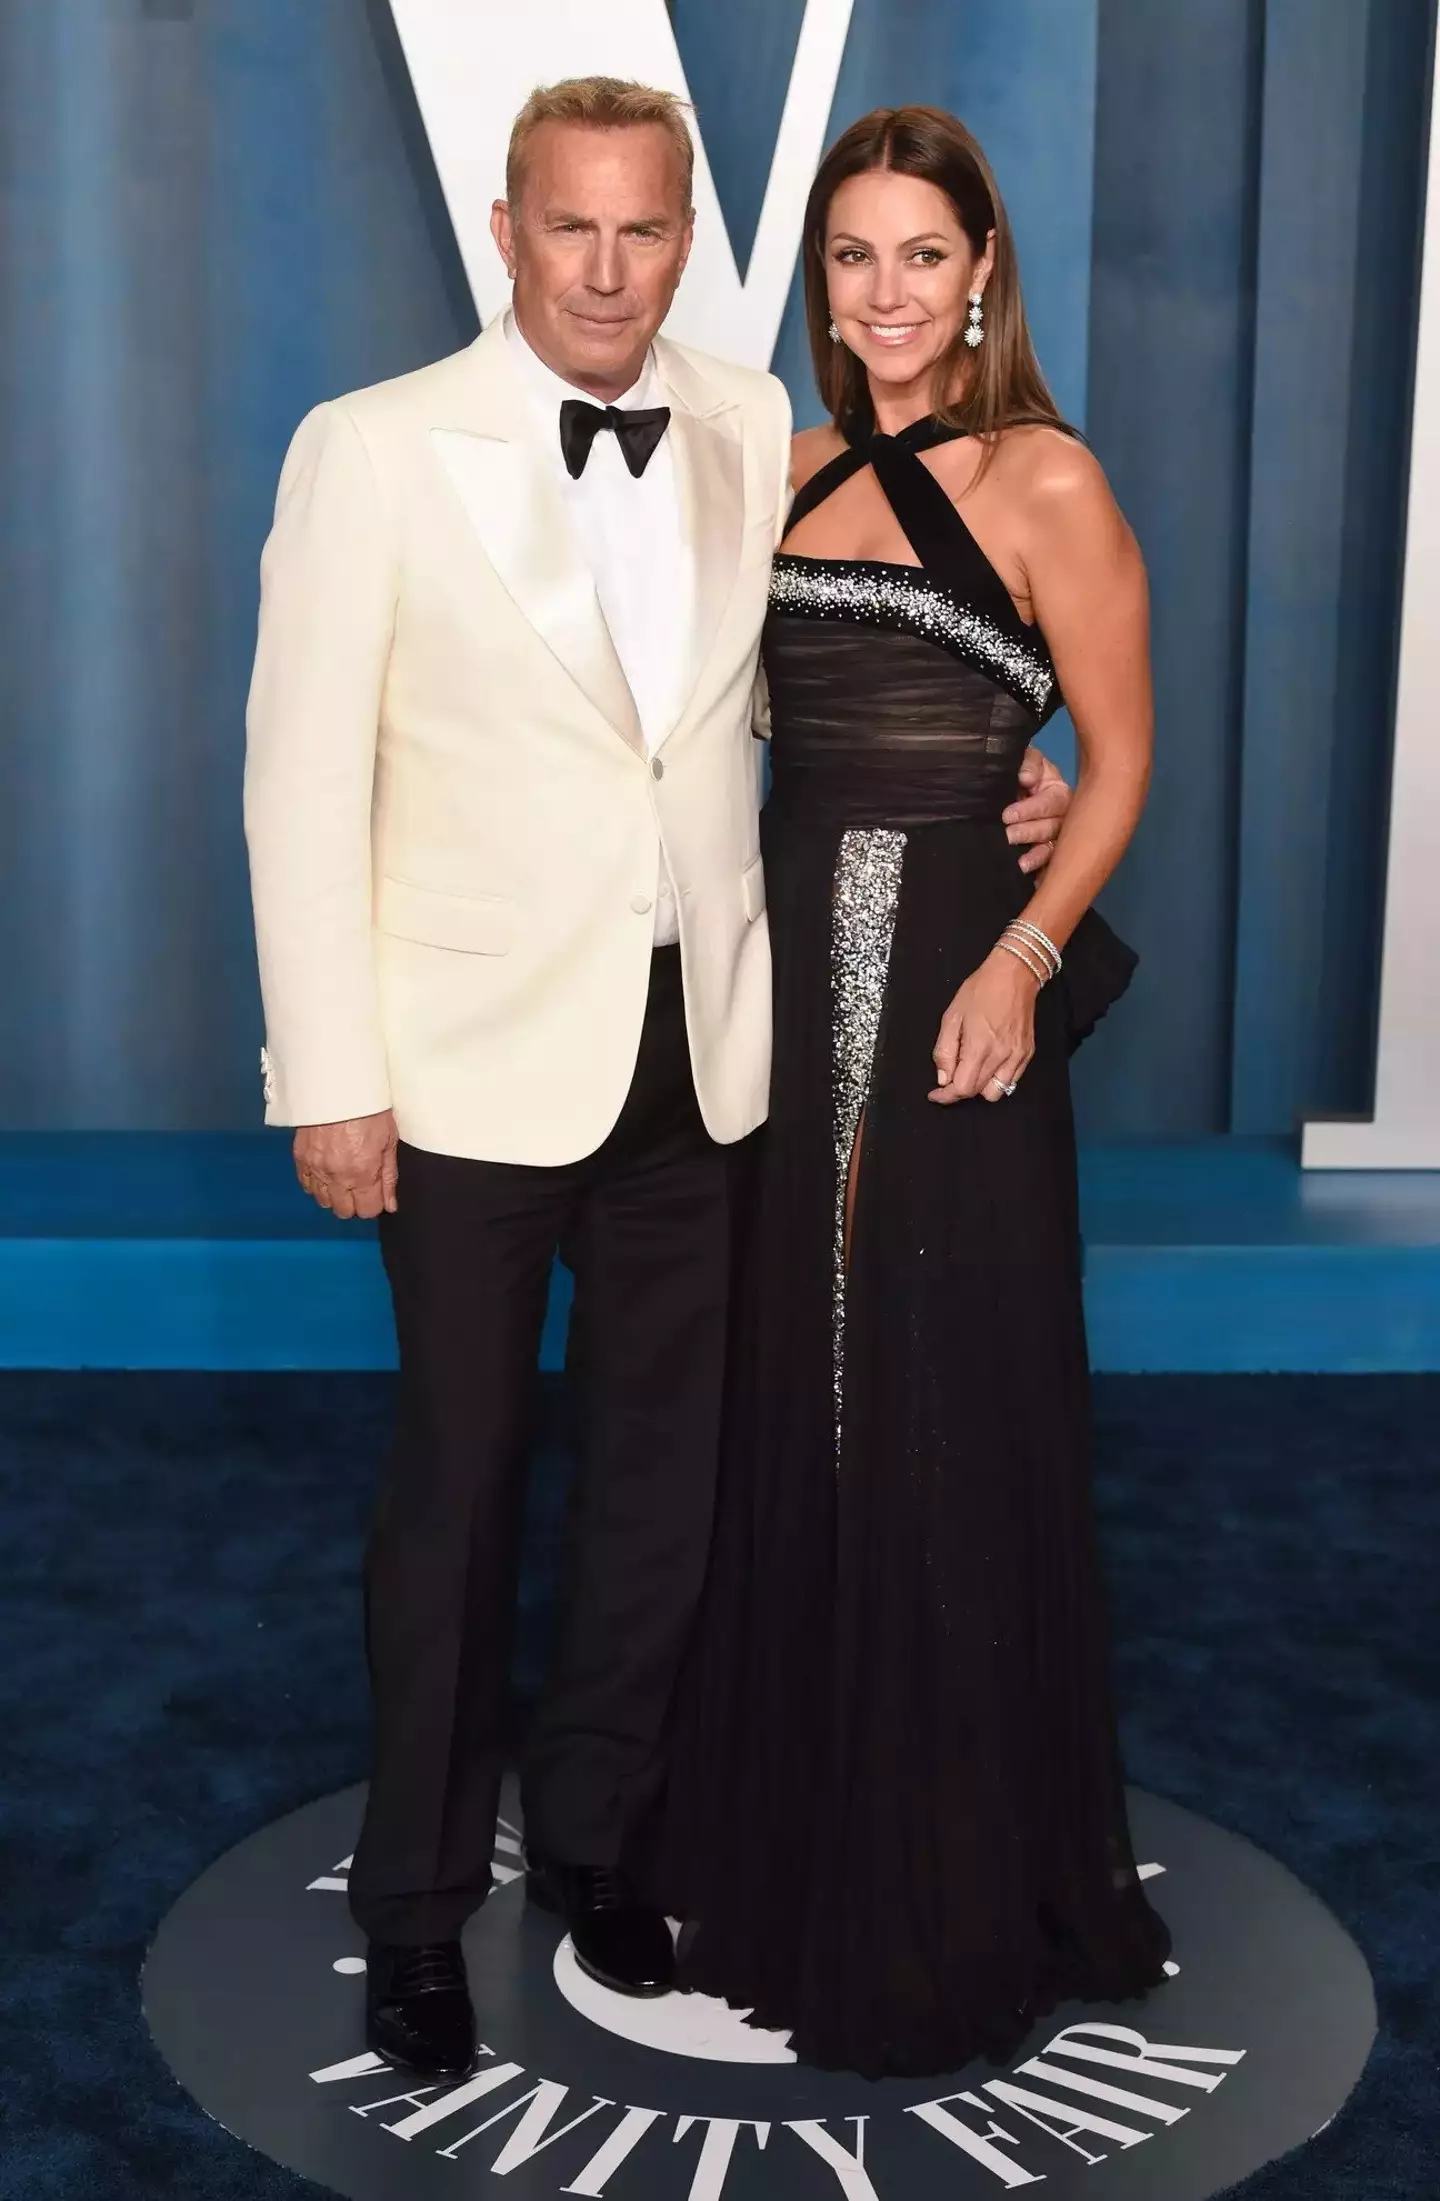 Kevin Costner and Christine Baumgartner split last month after 18 years of marriage.